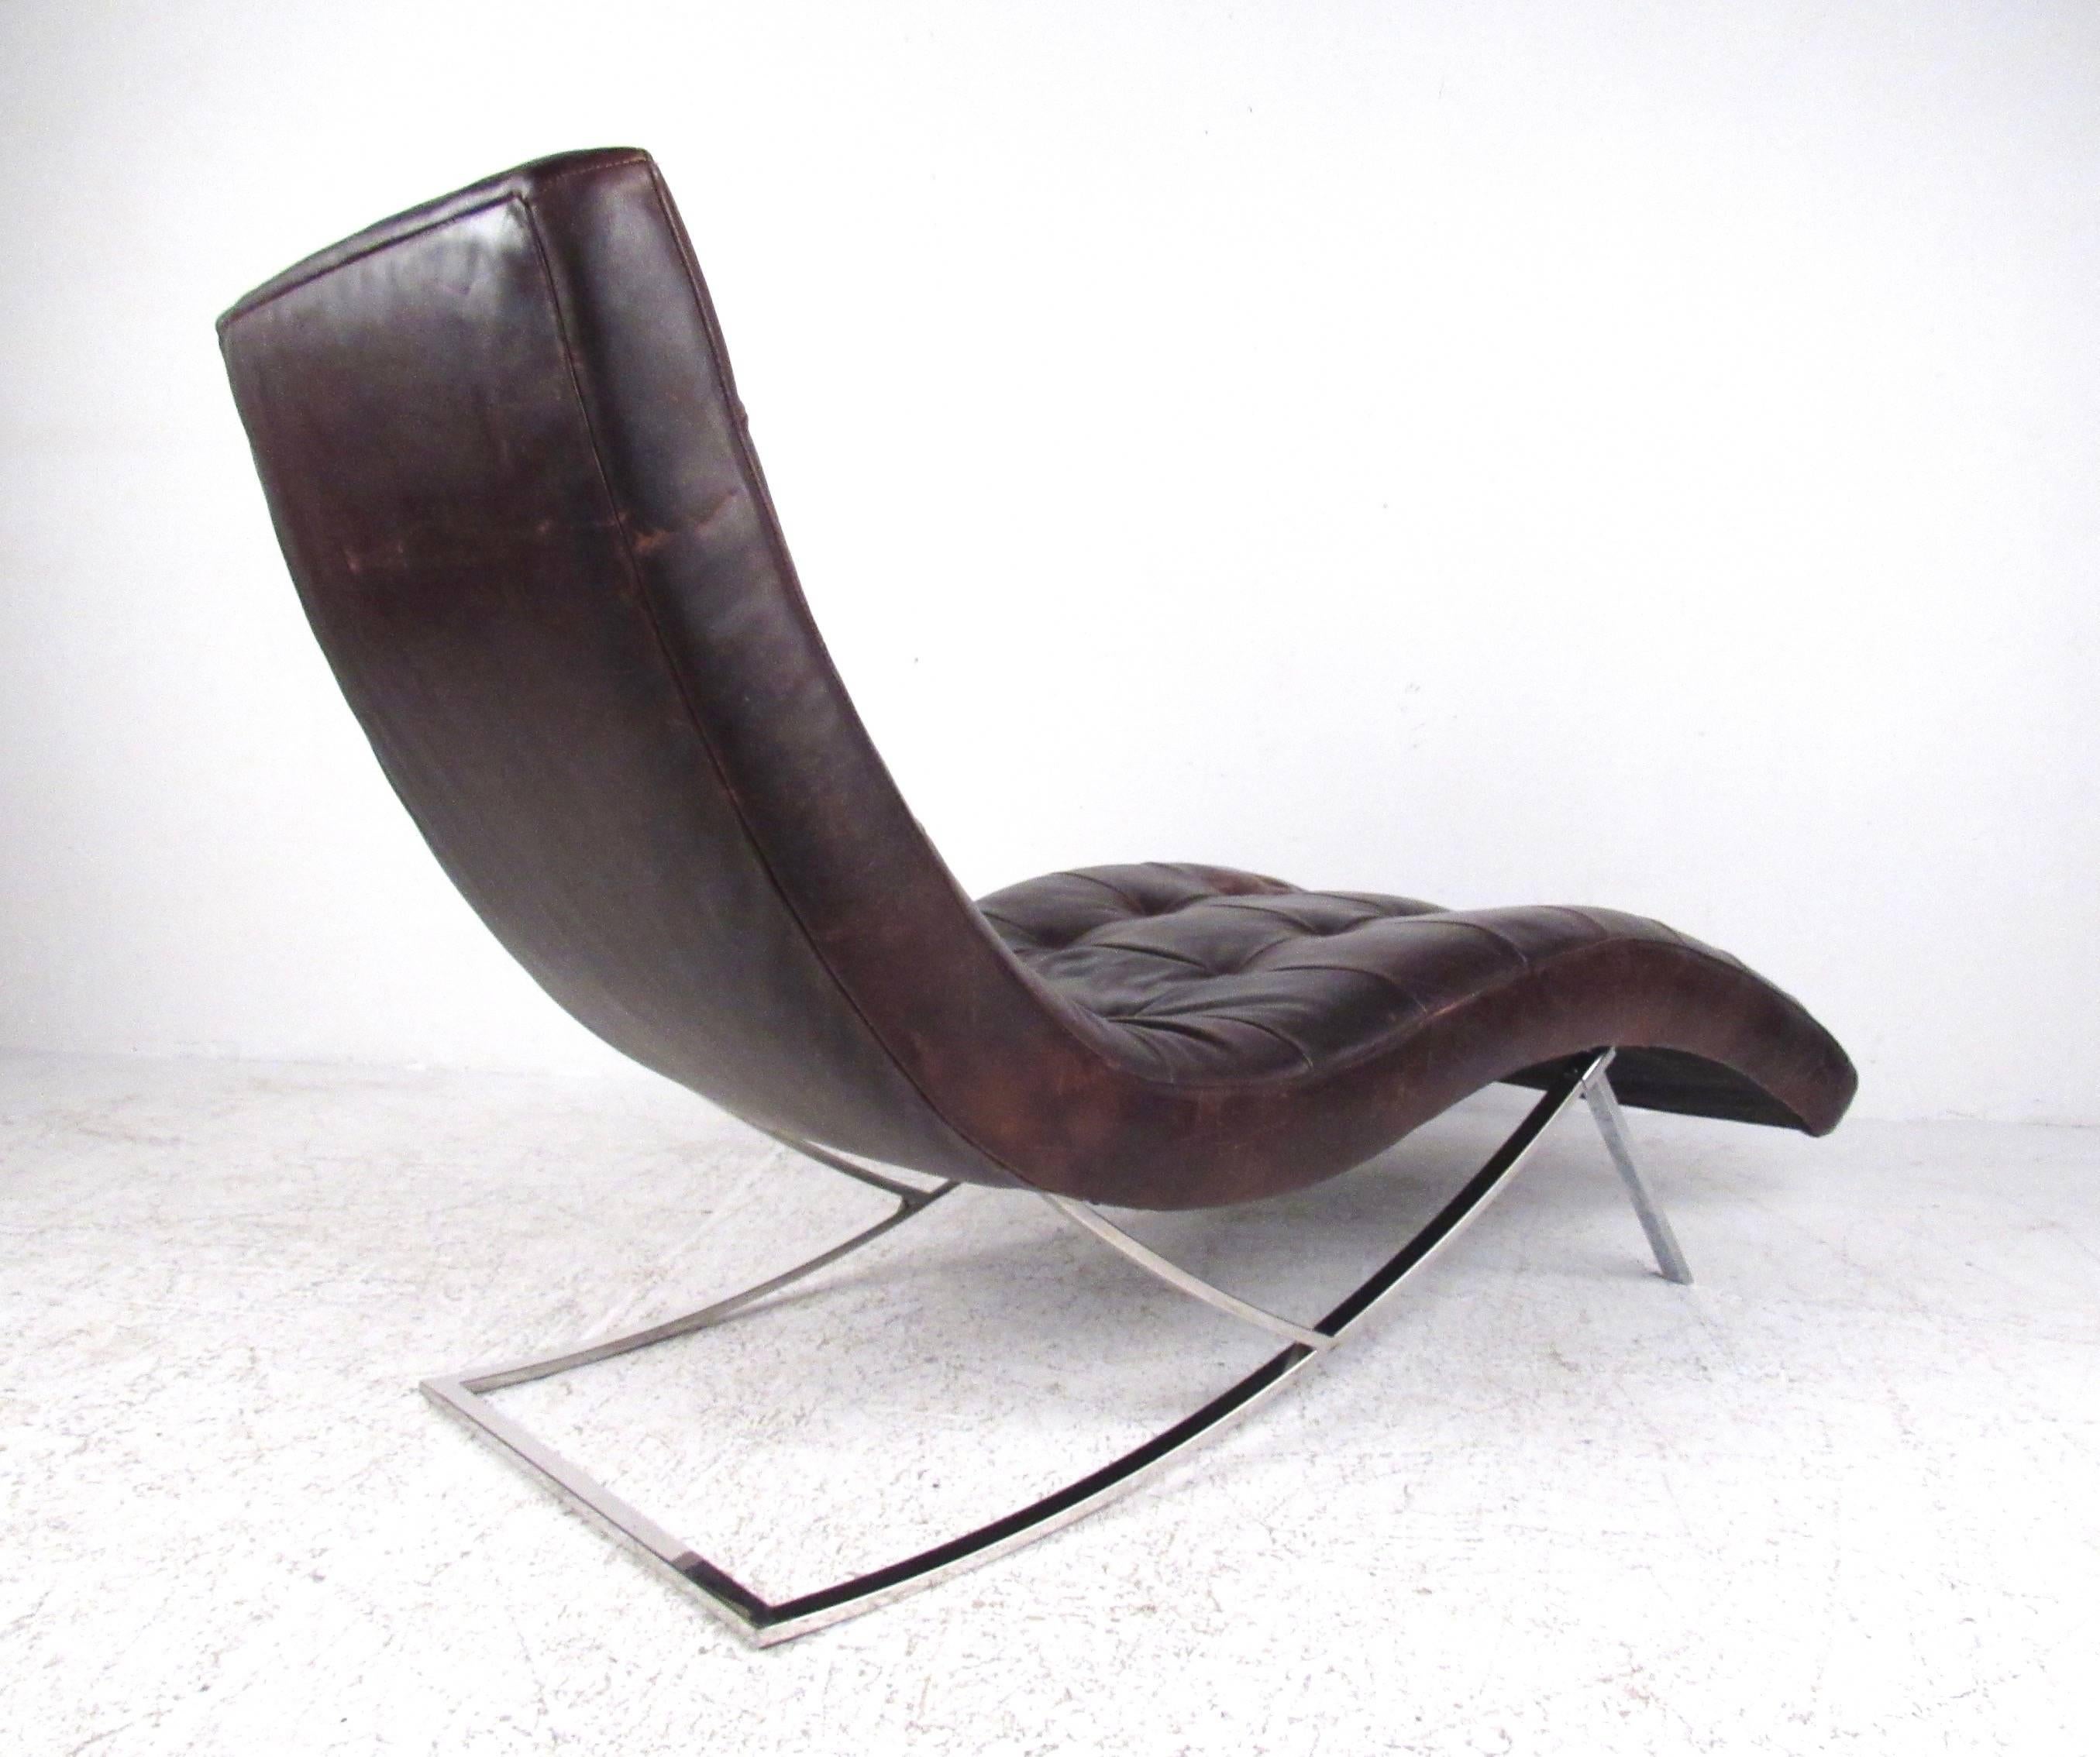 Cette chaise longue moderne et élégante est composée de cuir marron tufté avec une patine vieillie et repose sur une base chromée. Le design confortable en fait un excellent siège pour la maison ou le bureau. Veuillez confirmer la localisation de